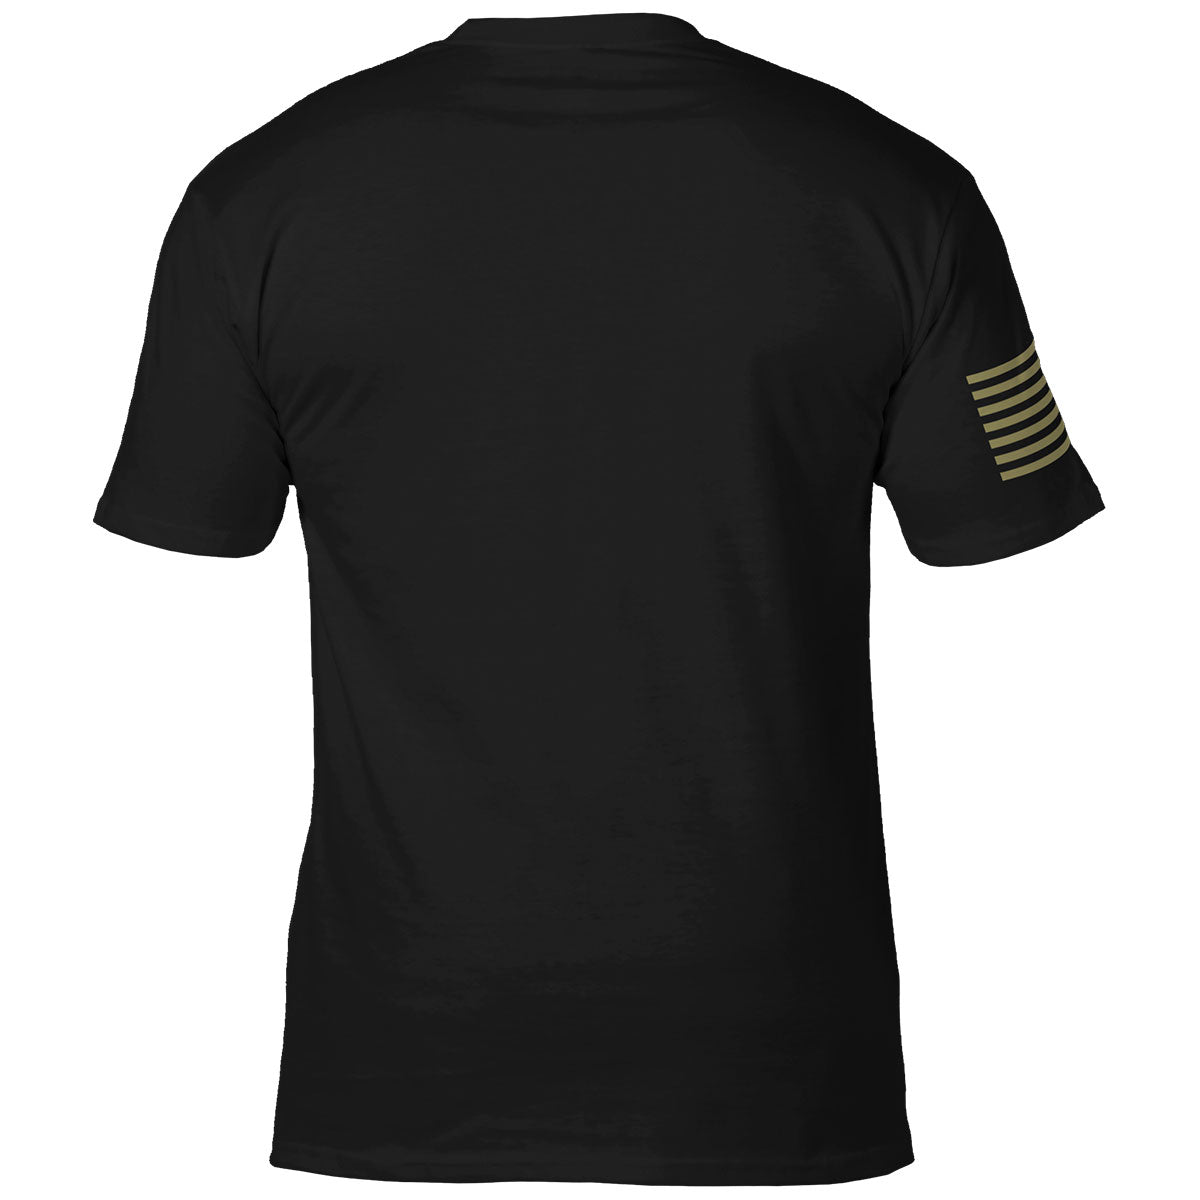 MAS Design Co Cbj Cannon T-Shirt